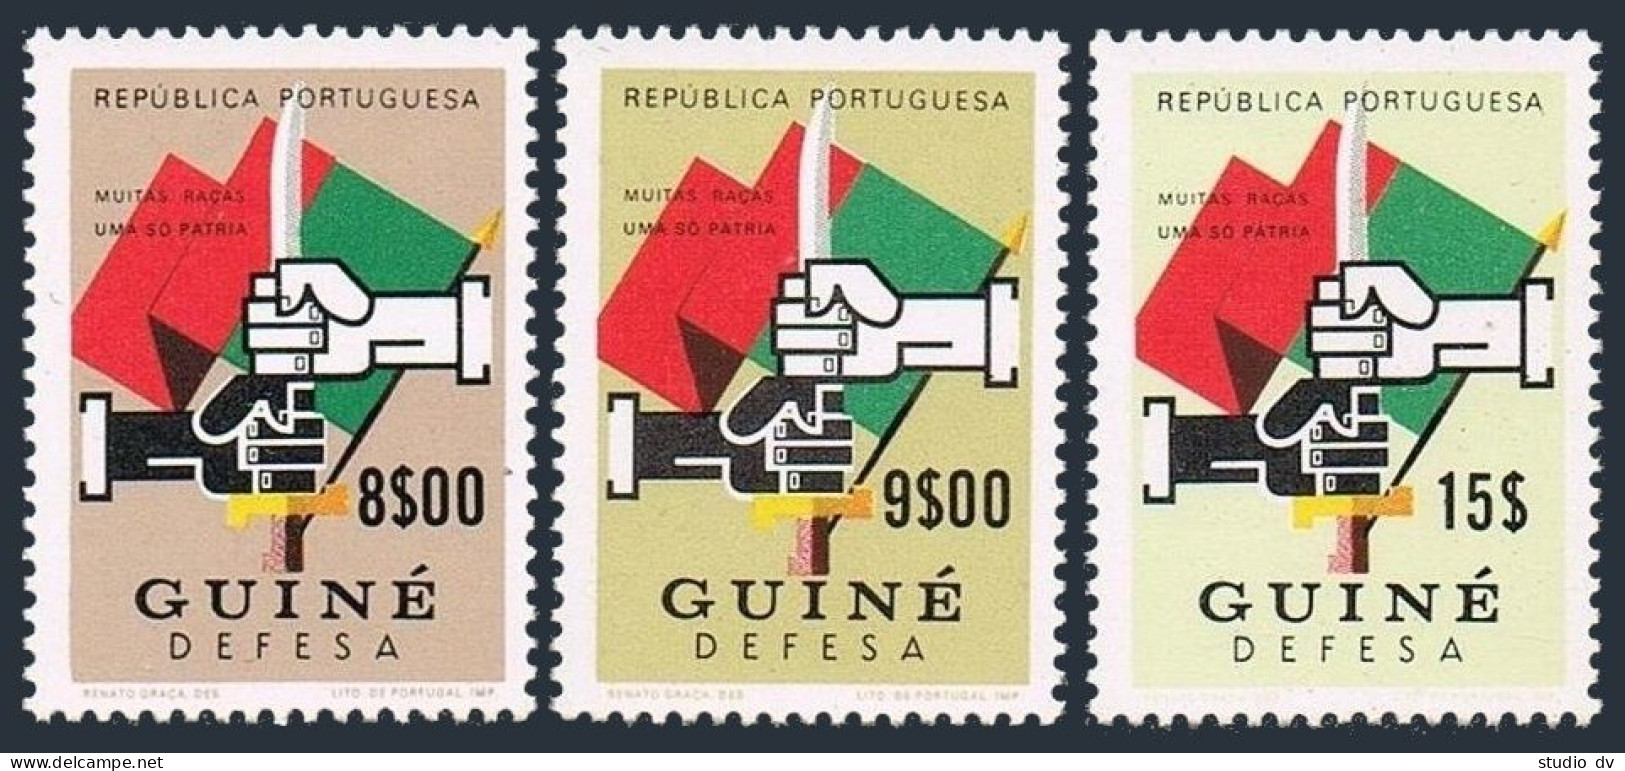 Port Guinea RA36, Note:stamps 8e,9e,15e.MNH. Postal Tax Stamps 1968.Hands-Sword. - Guinea (1958-...)